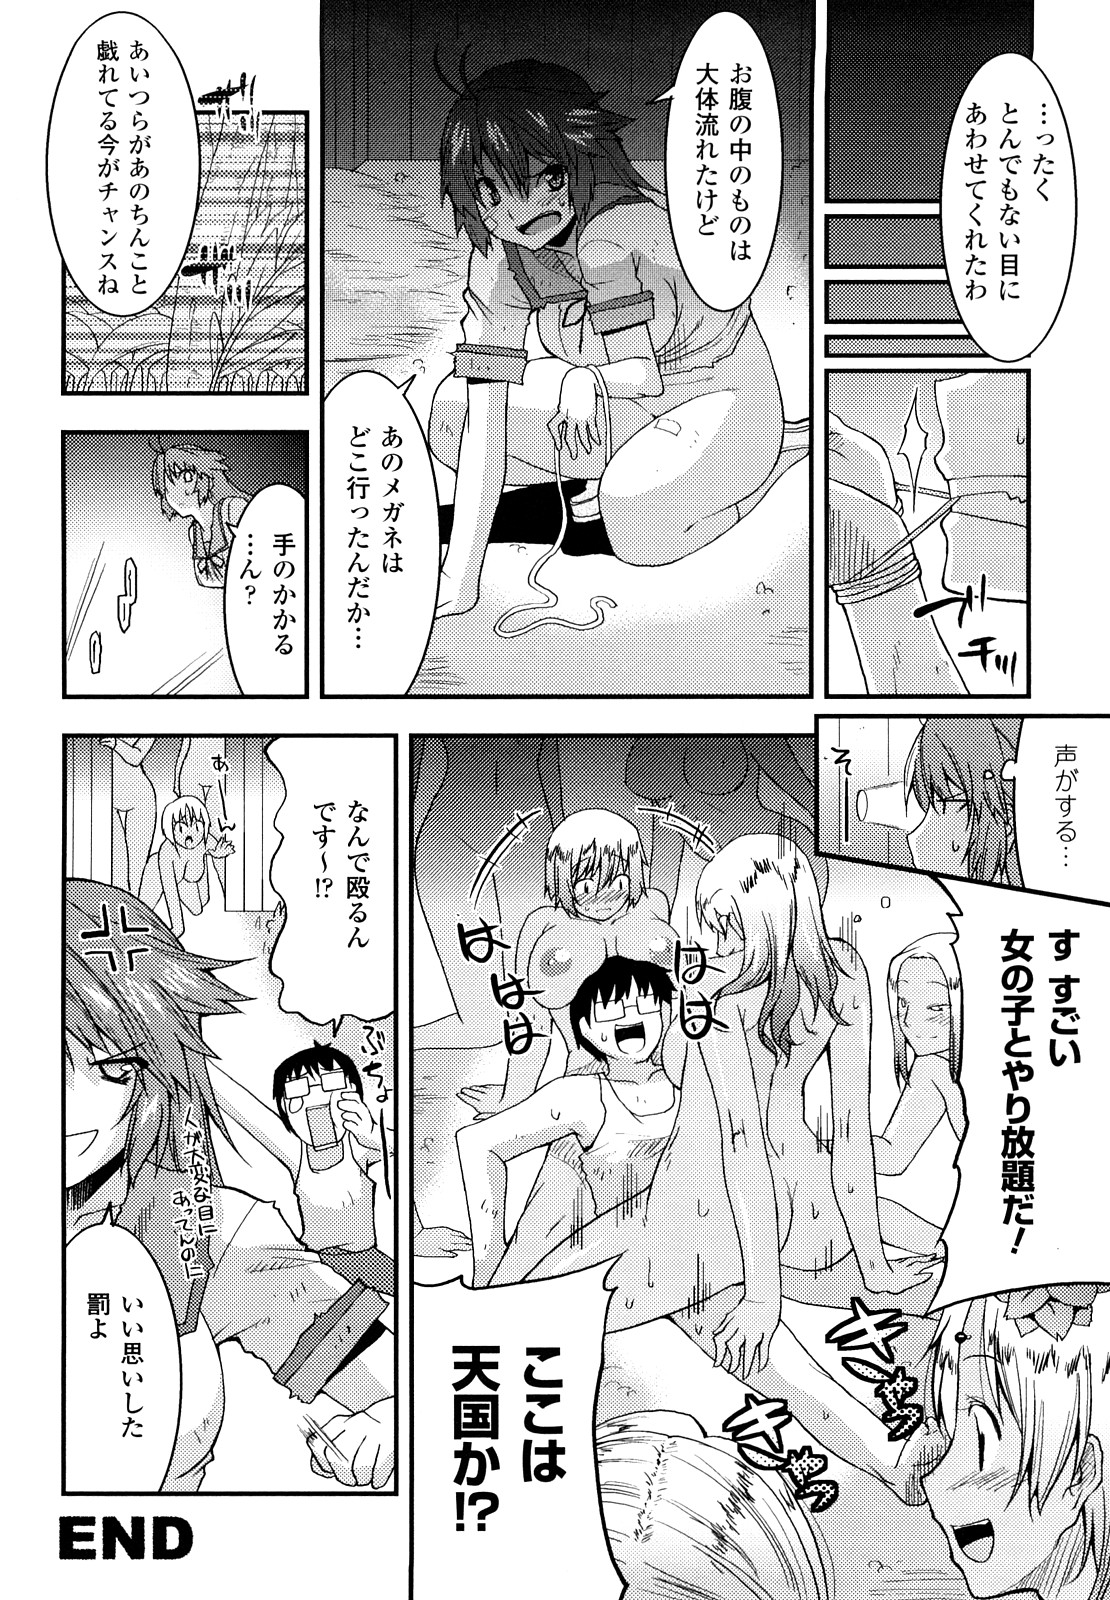 [Utamaro] Funi Puny Days page 36 full